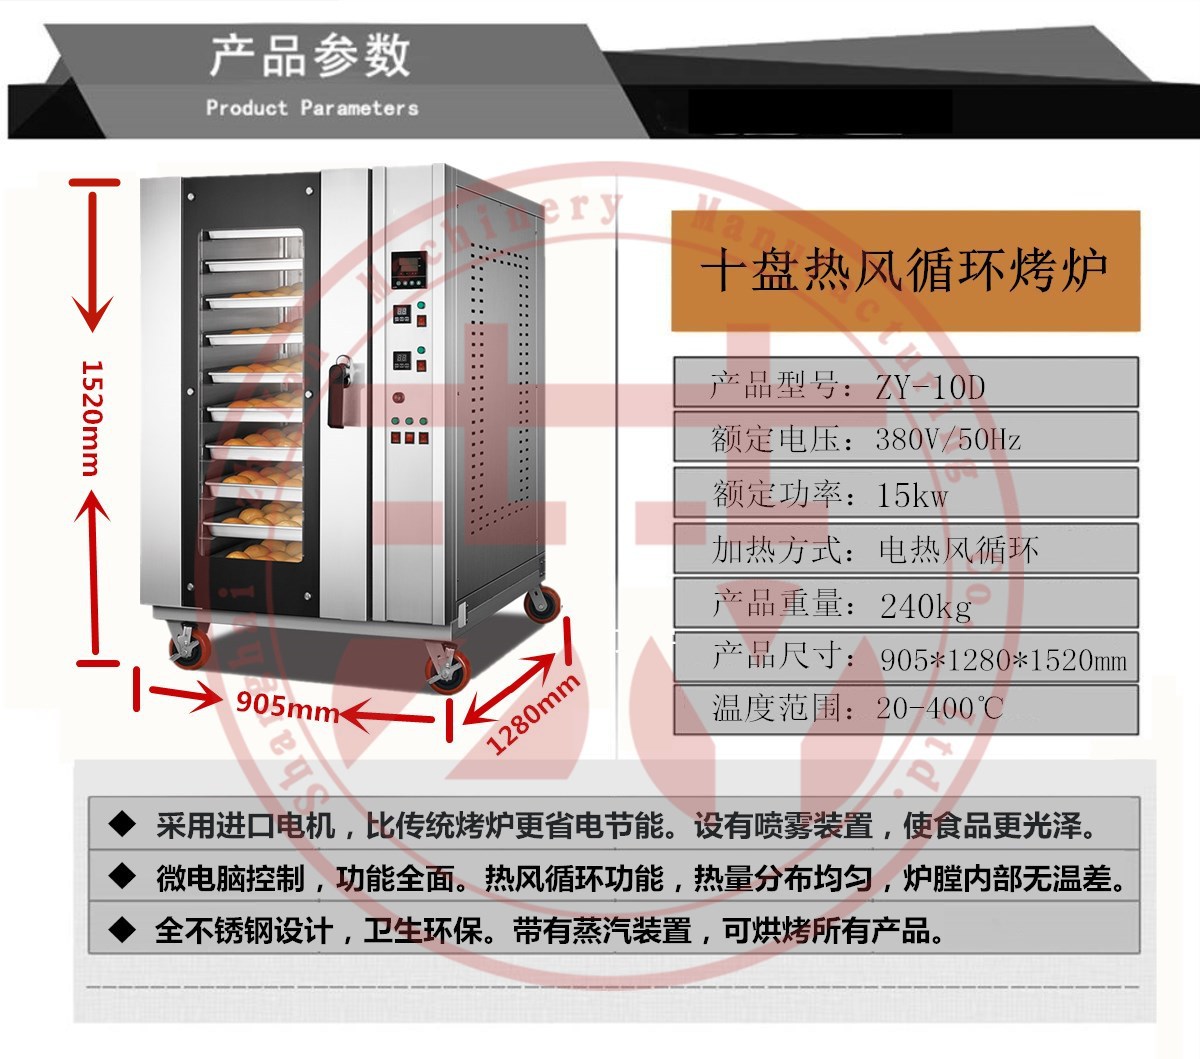 厂家直销10盘热风烤箱 钢化玻璃观察窗微电脑控制面板 电热大烤箱示例图6